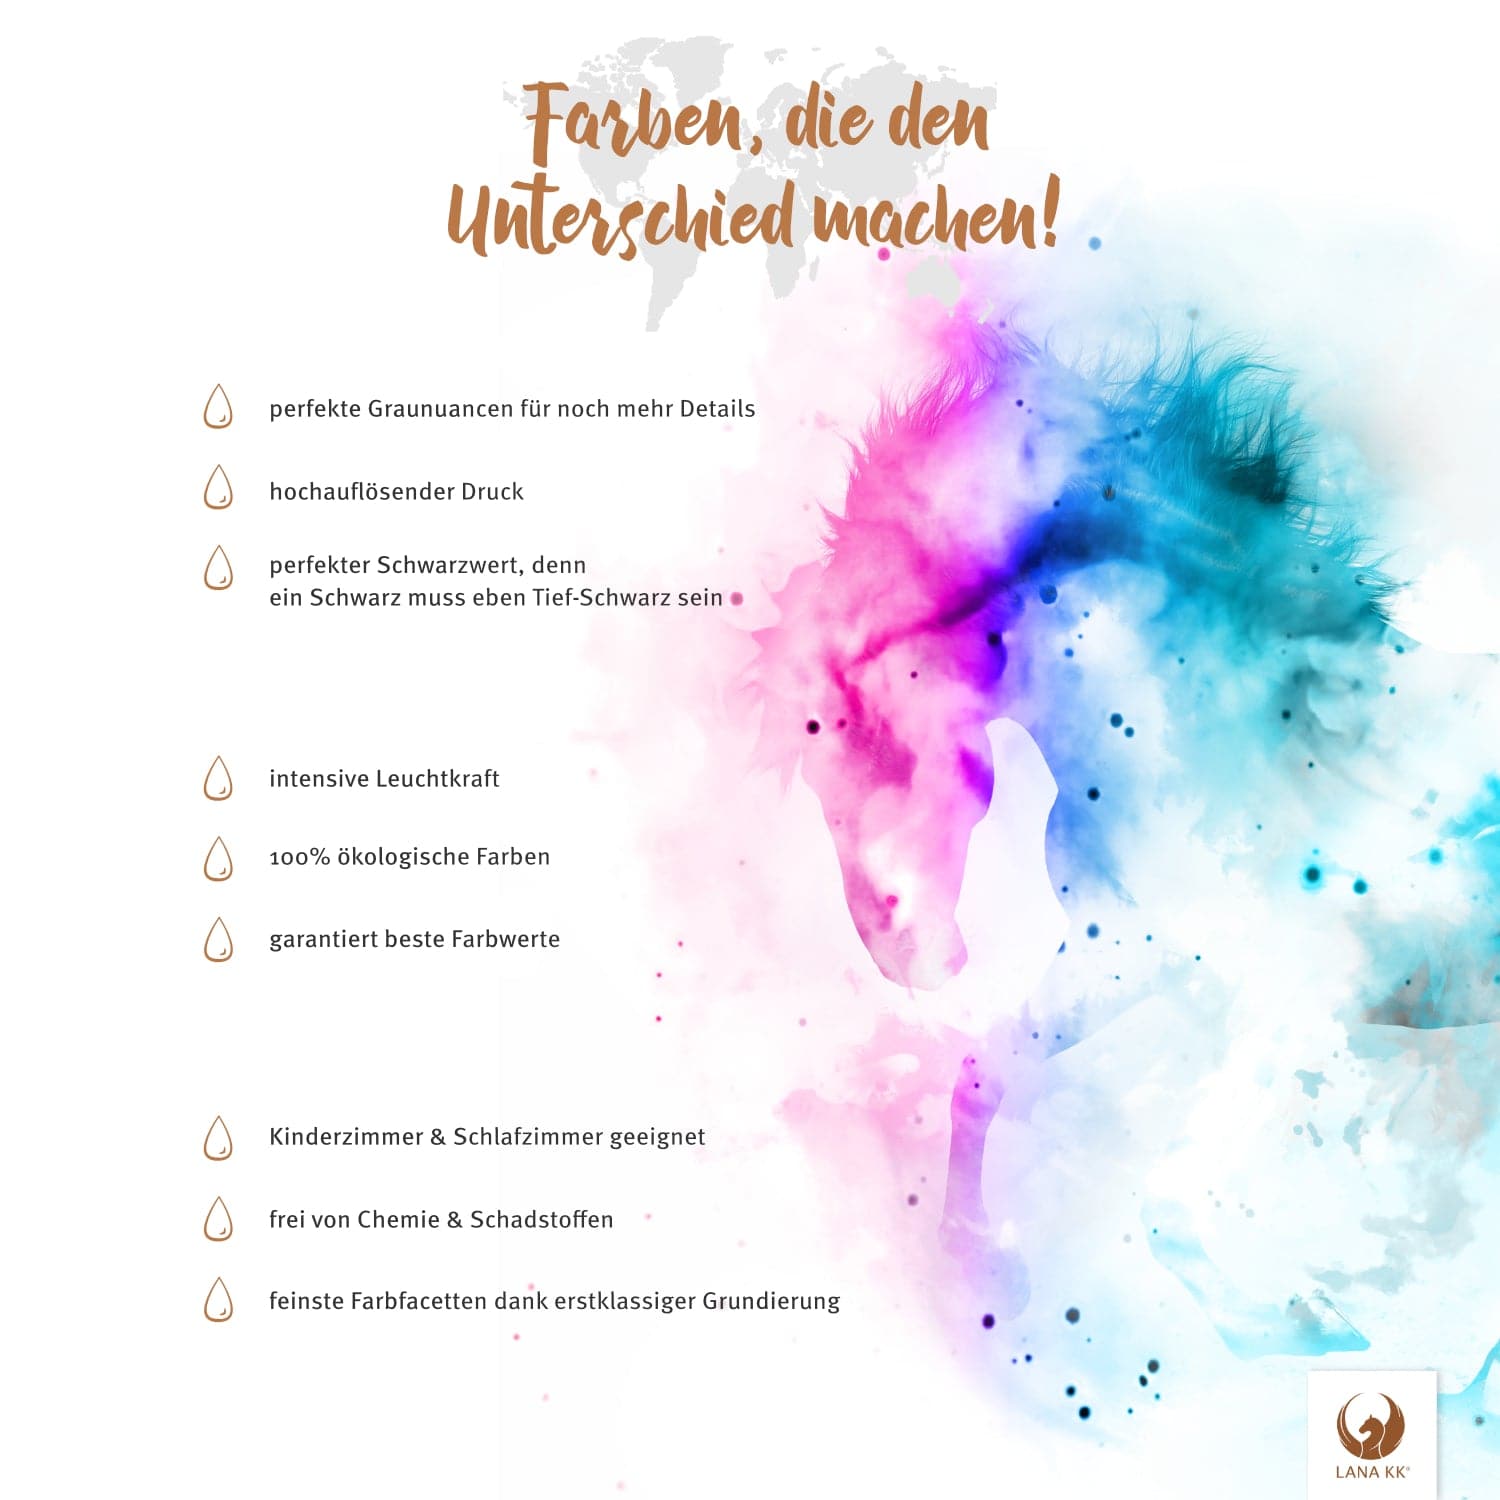 Farben, die den Unterschied machen! Deine Österreichkarte Kolonialrot besticht mit erstklassigem Druck, leuchtenden Farben und ist dabei vollkommen frei von Chemie und Farbstoffen.